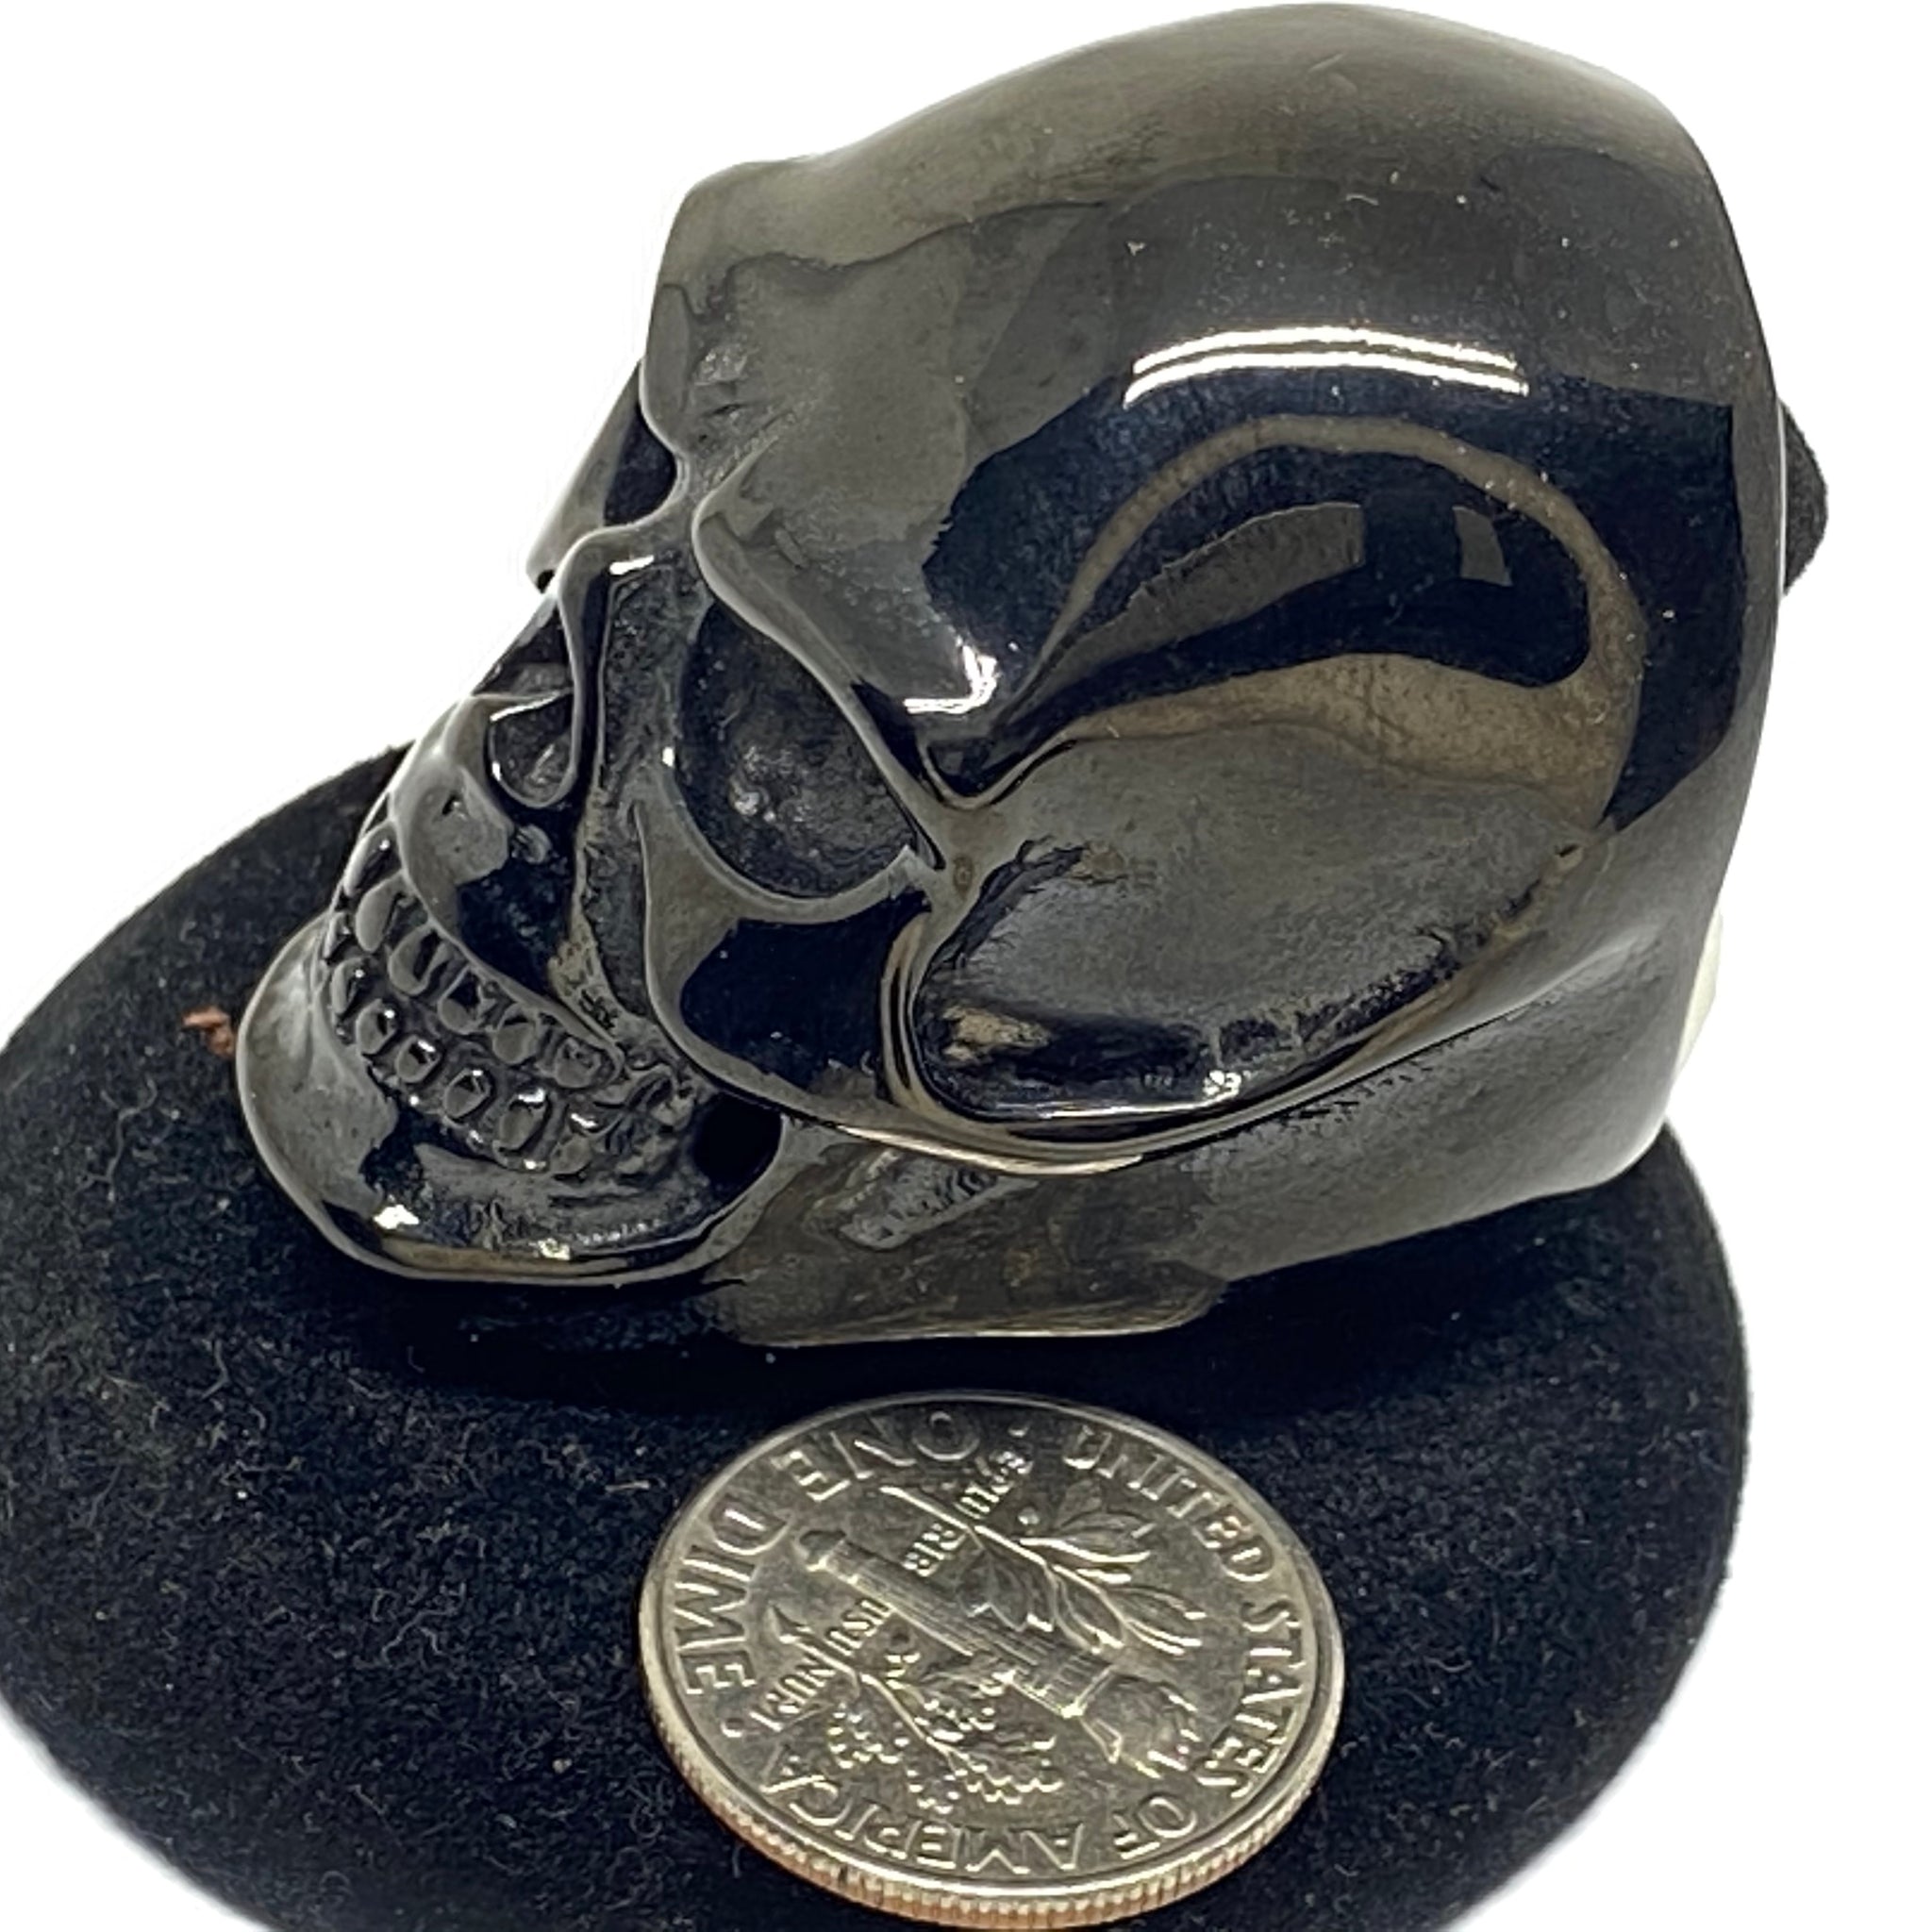 Stainless Steel Skull ring